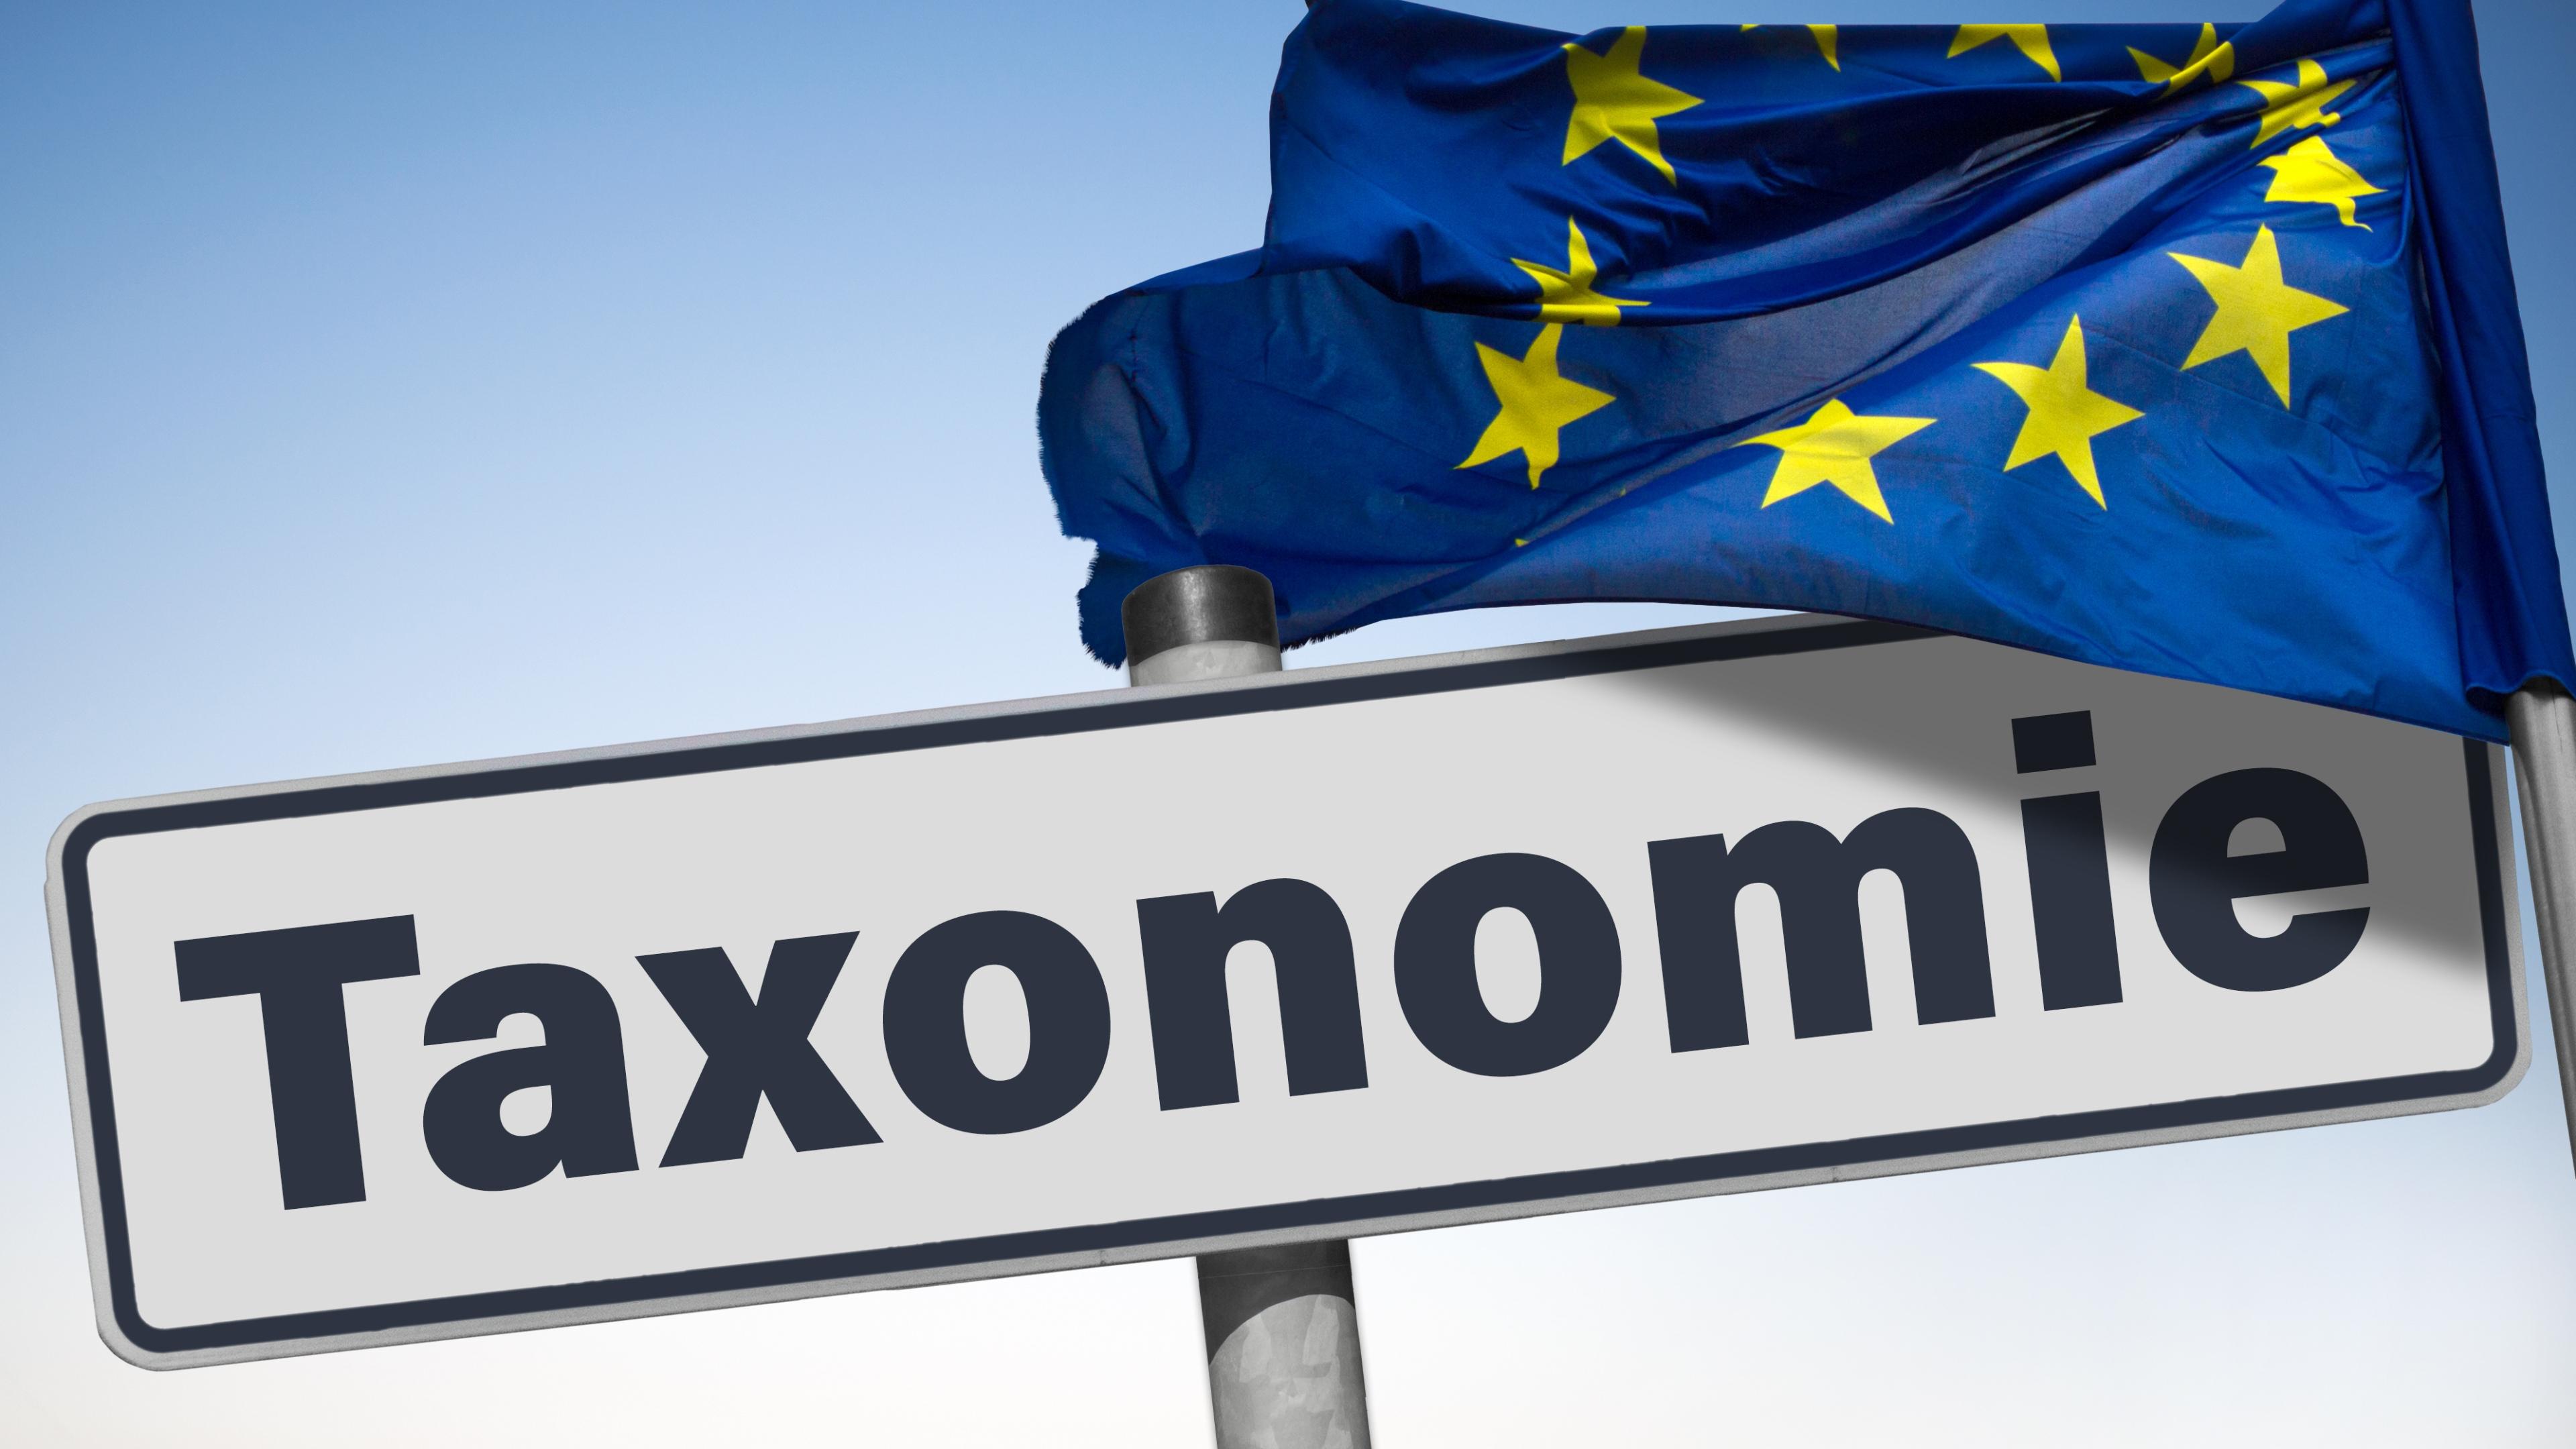 Europaflagge weht über einem Schild mit der Aufschrift "Taxonomie"